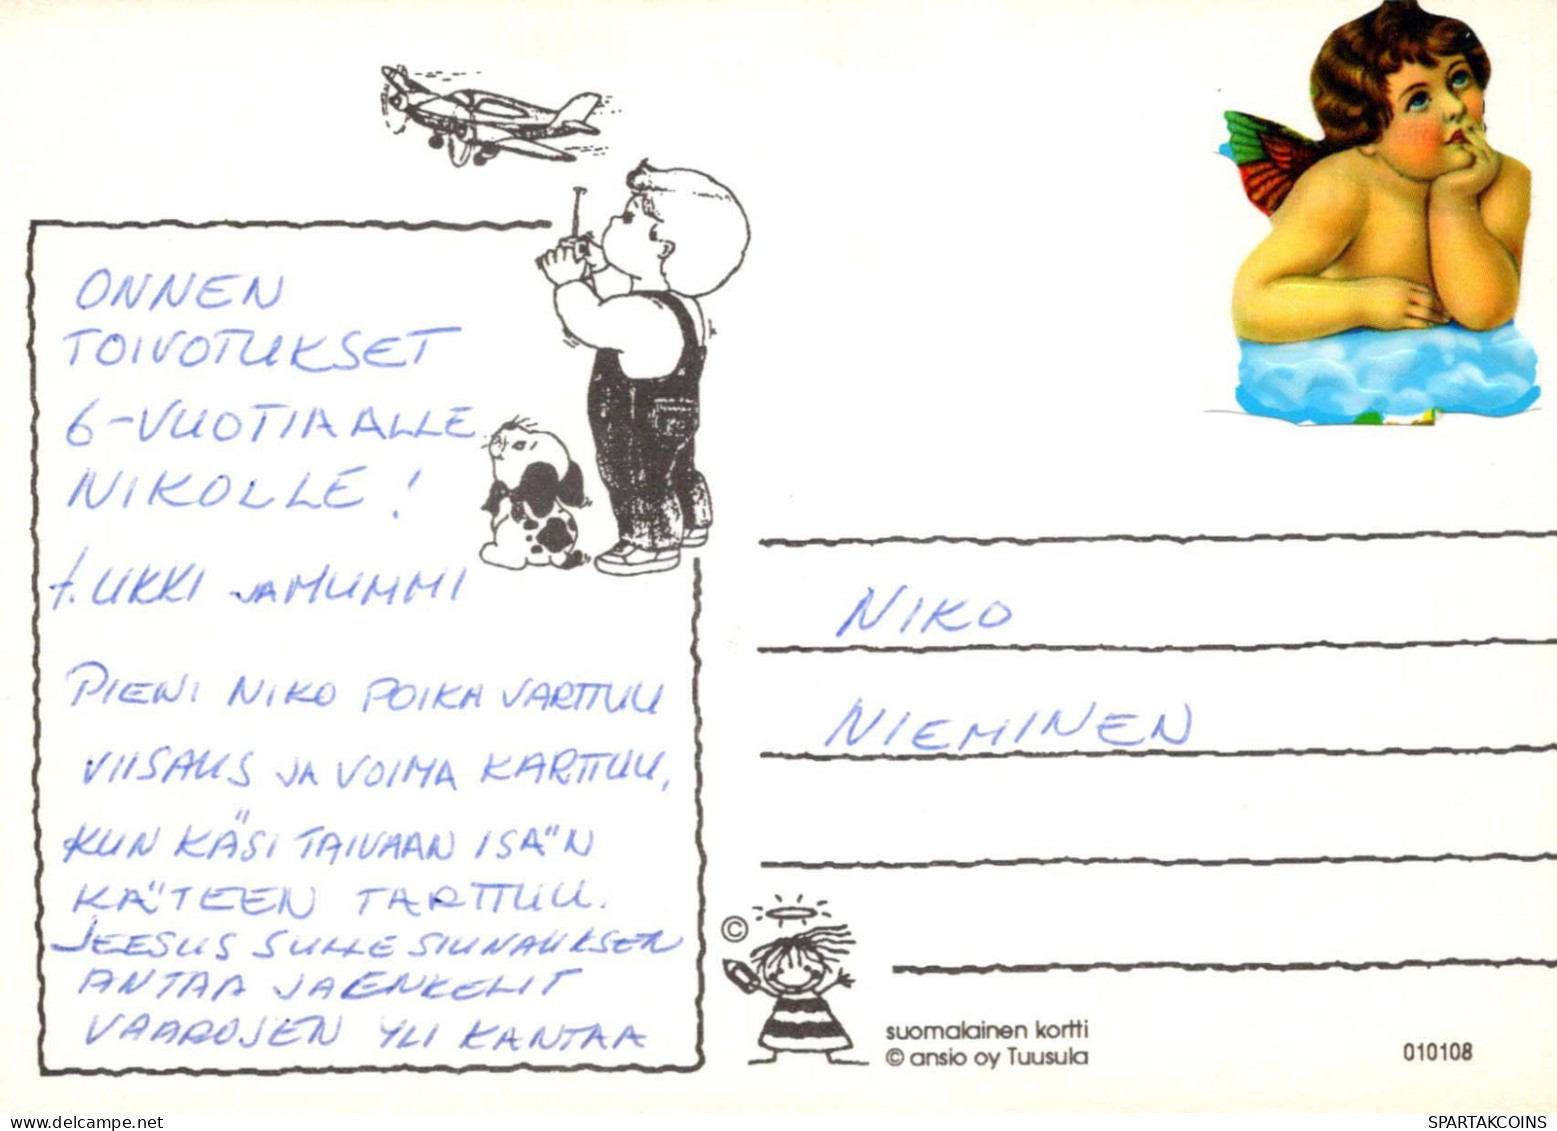 ALLES GUTE ZUM GEBURTSTAG 6 Jährige JUNGE KINDER Vintage Ansichtskarte Postkarte CPSM #PBU002.DE - Birthday